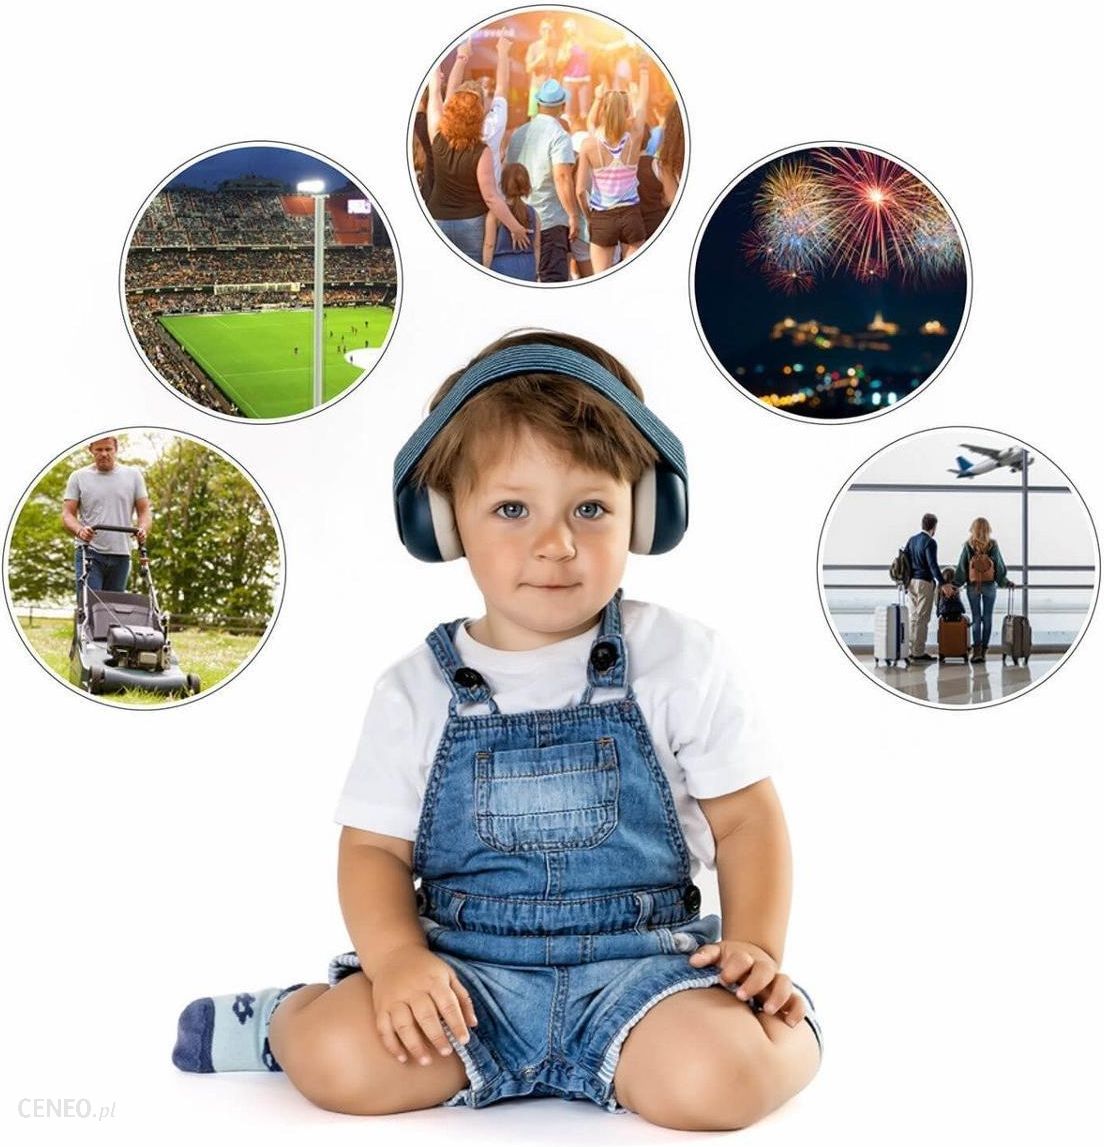 Reer Silentguard Słuchawki Ochronne Dla Dzieci 3M+ Niebieskie